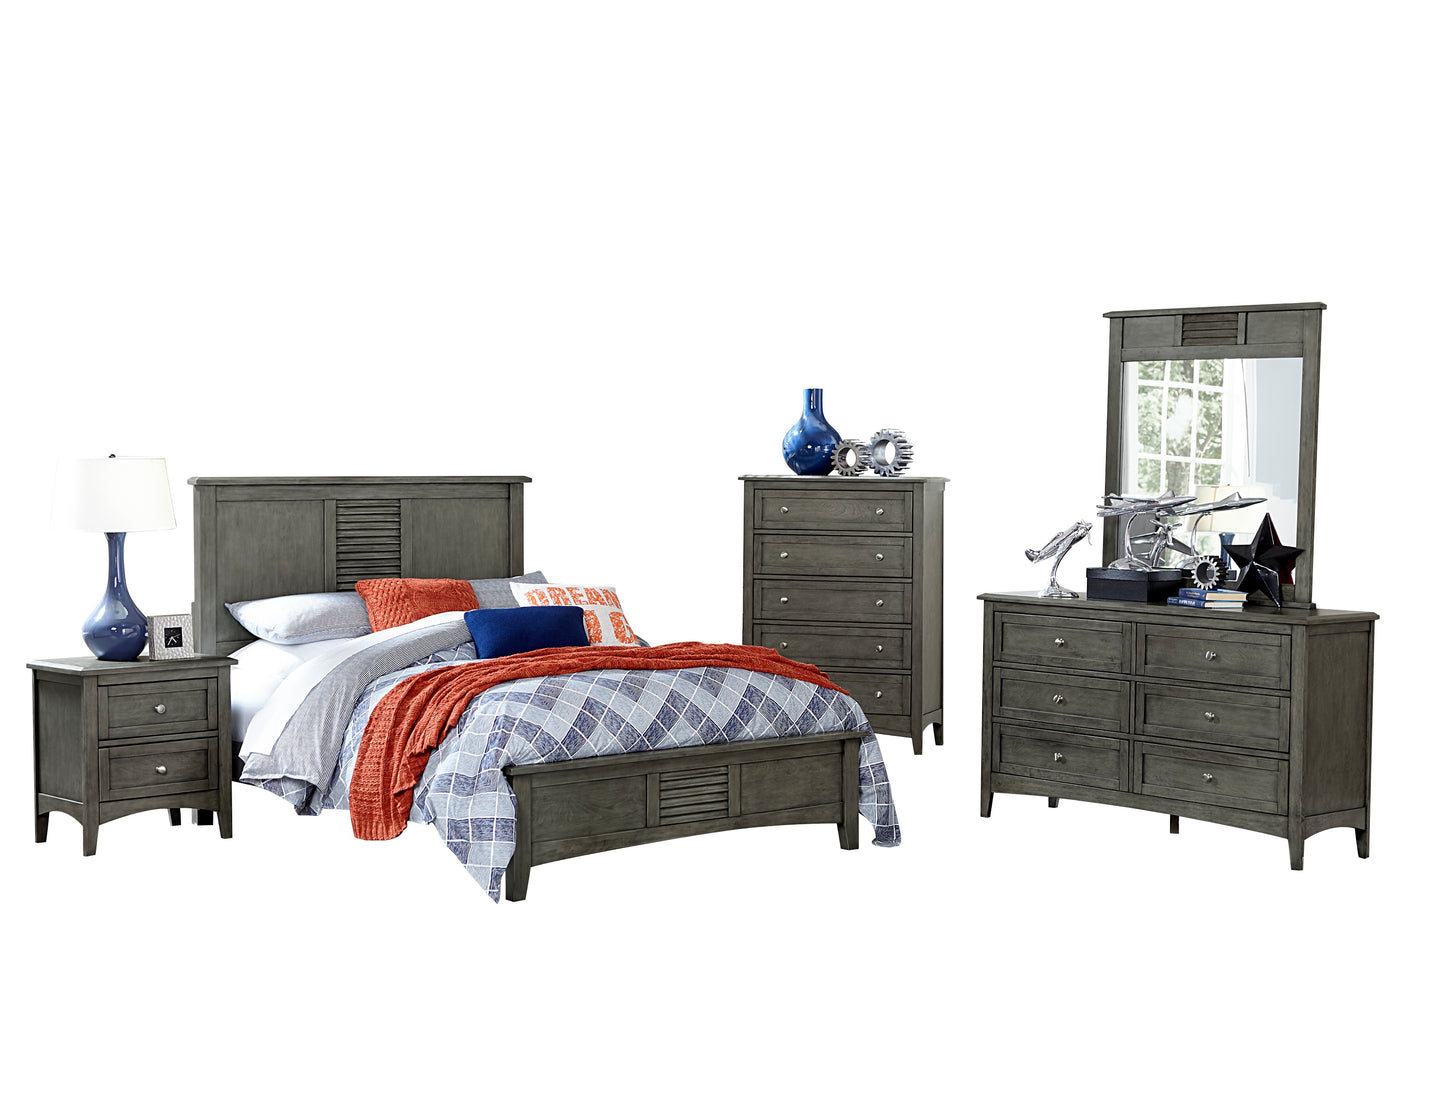 Gabbert Rustic 5PC Bedroom Set E King Bed, Dresser, Mirror, Nightstand, Chest in Grey